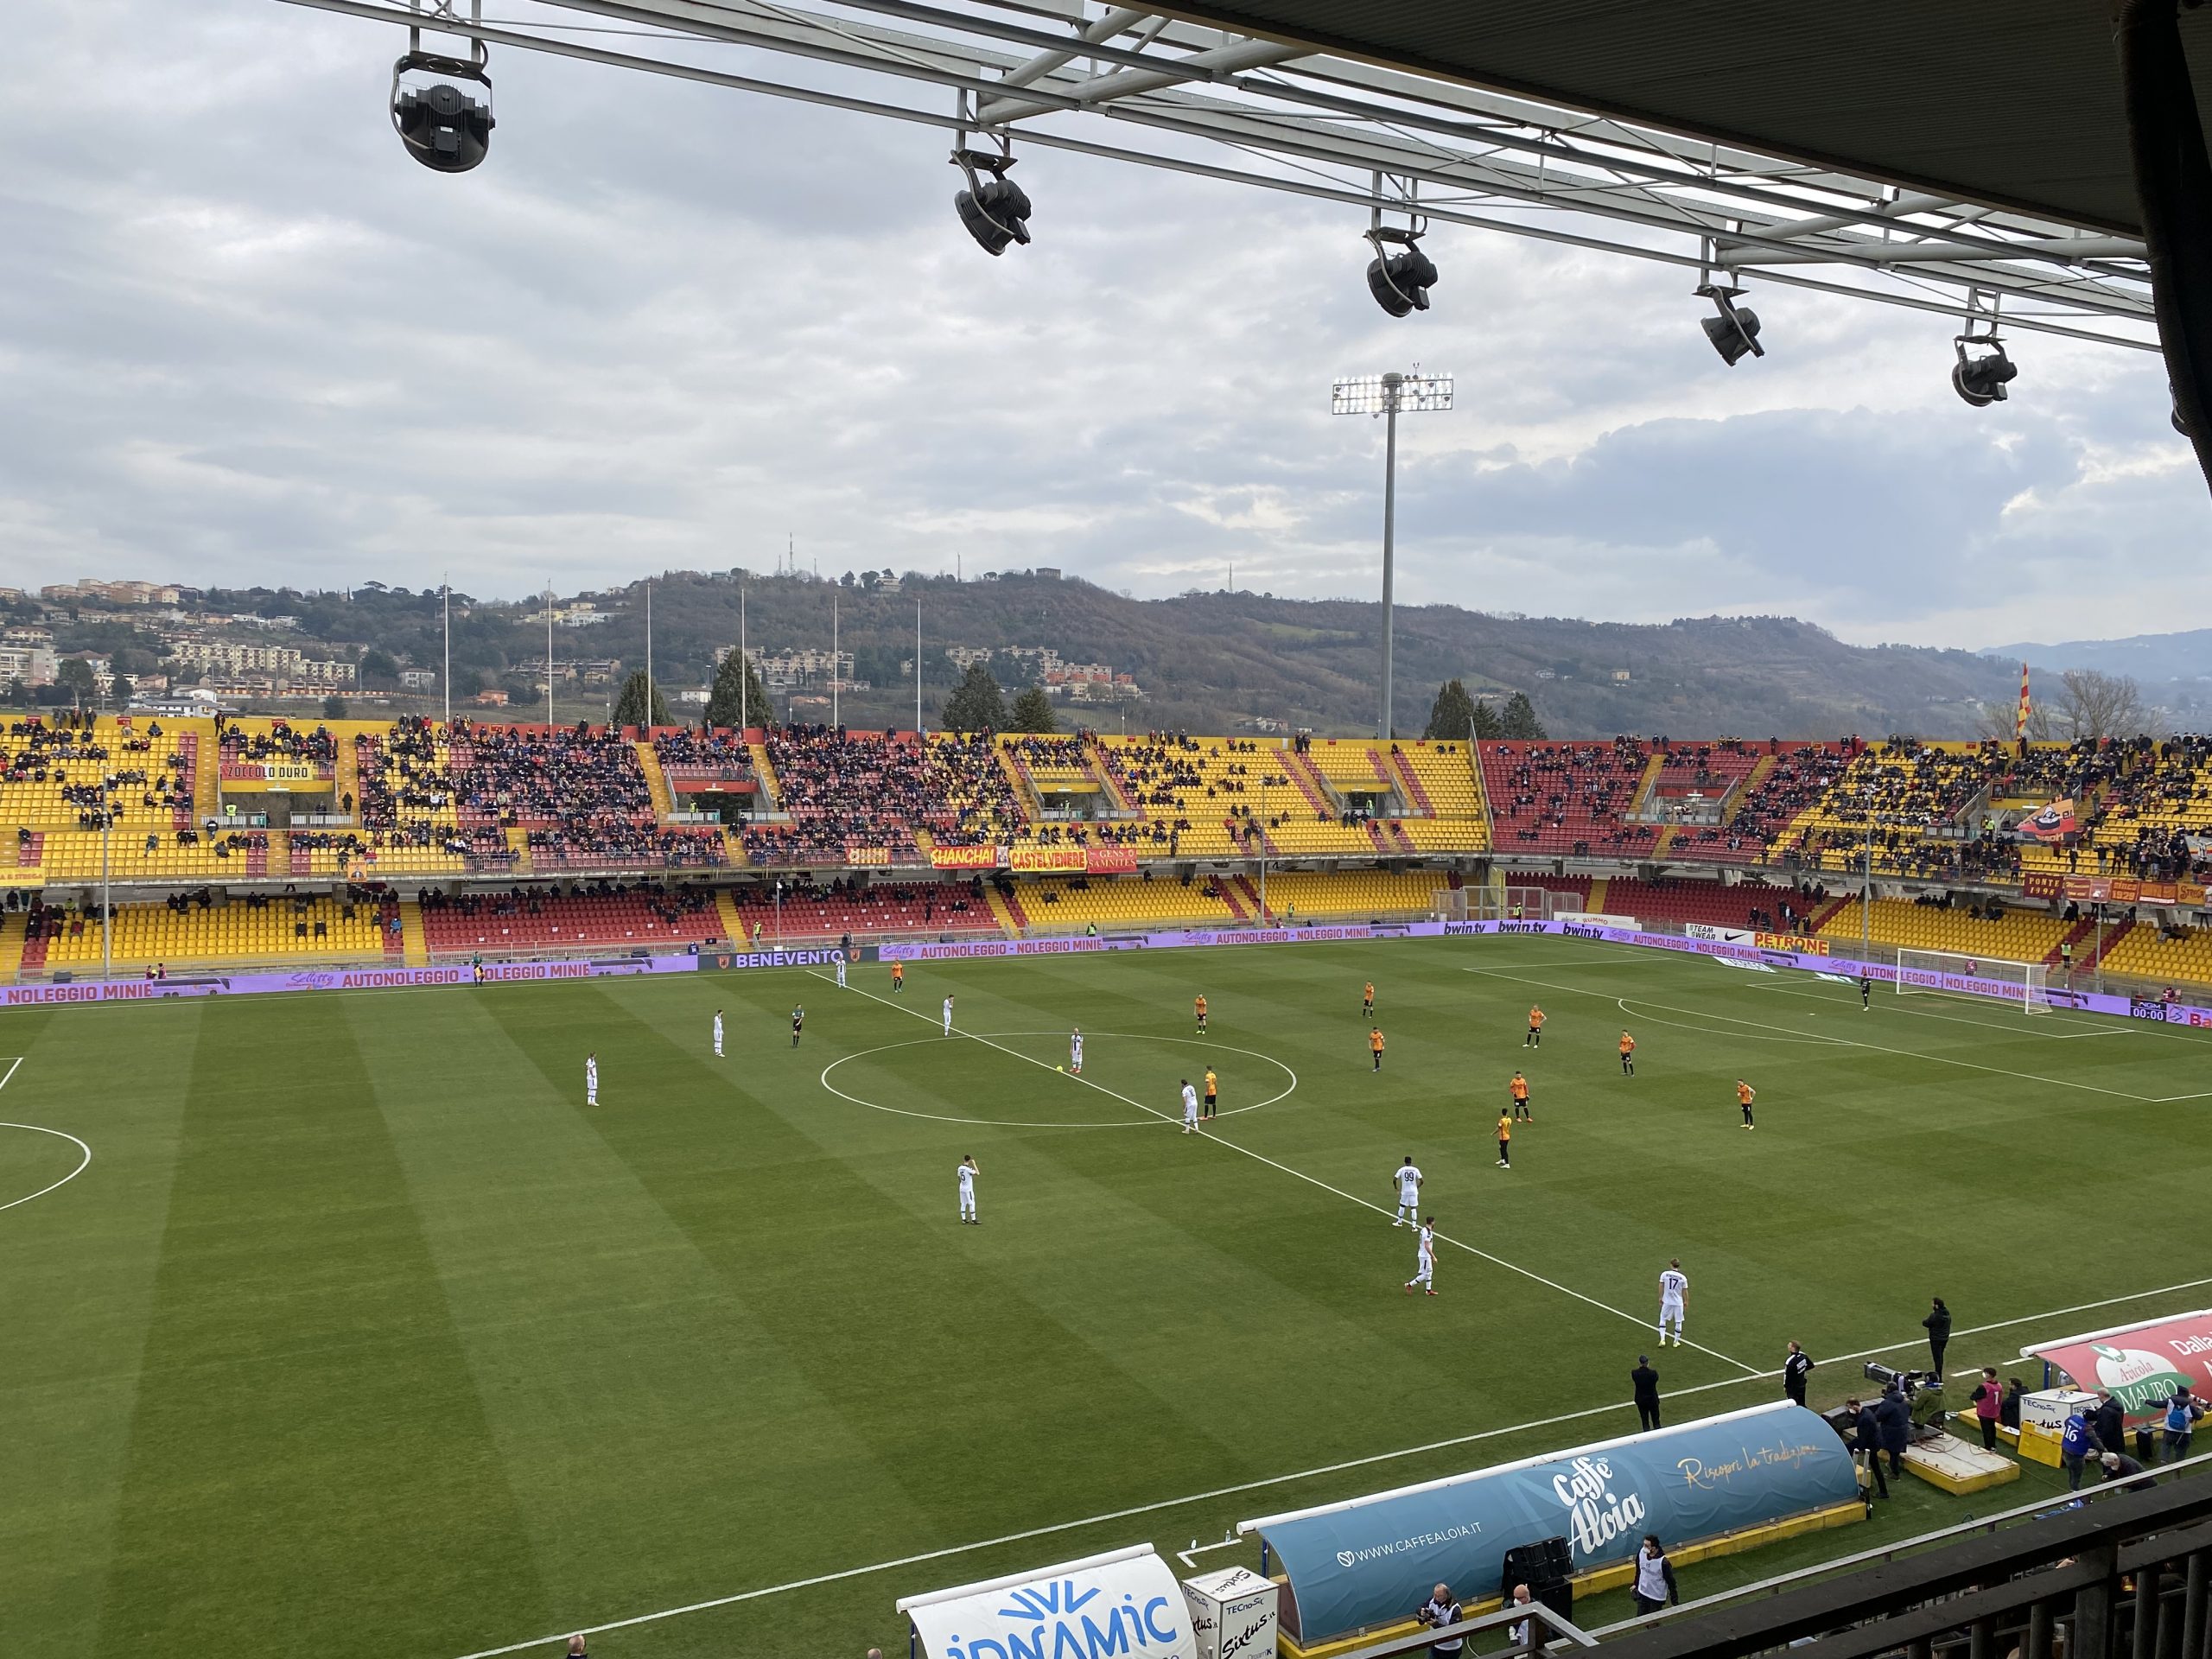 Benevento-Parma: 0-0. A reti inviolate il big-match del “Vigorito”